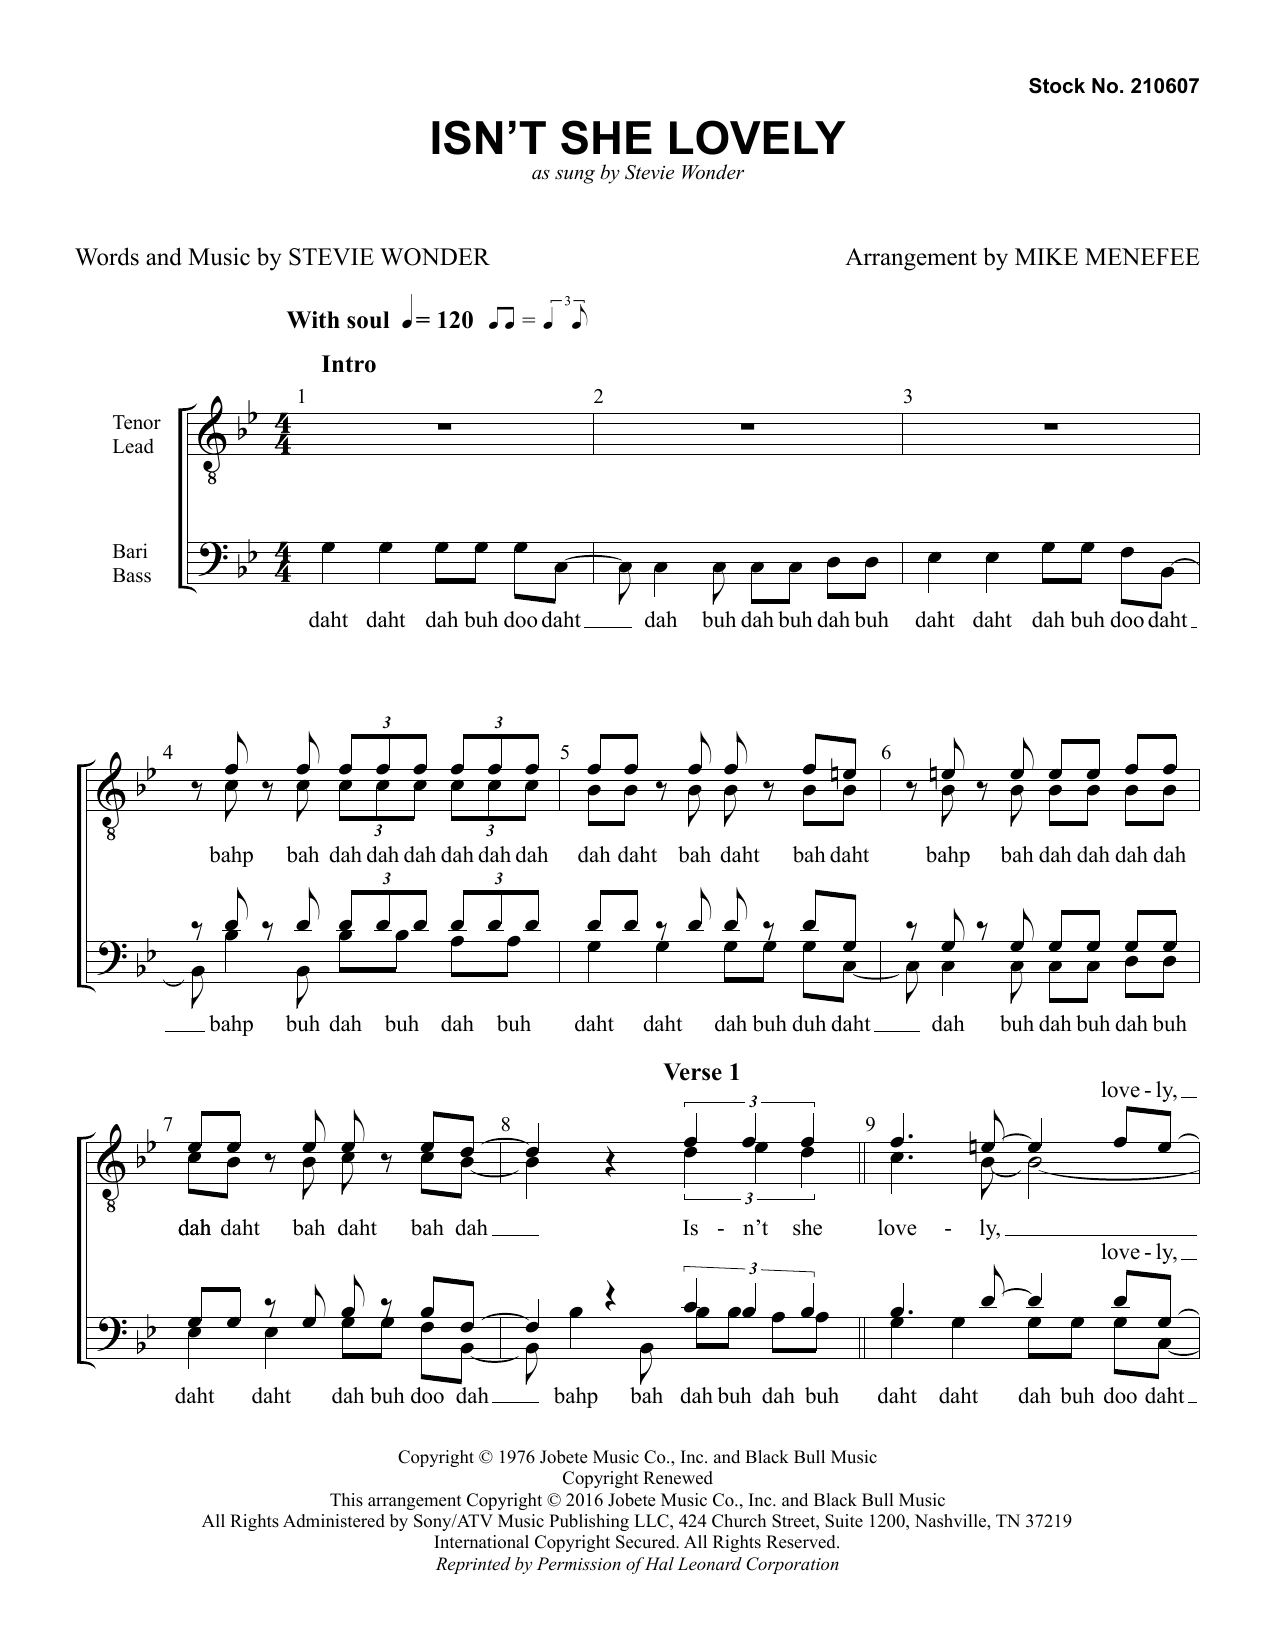 Stevie Wonder Isn't She Lovely (arr. Mike Menefee) Sheet Music Notes & Chords for TTBB Choir - Download or Print PDF